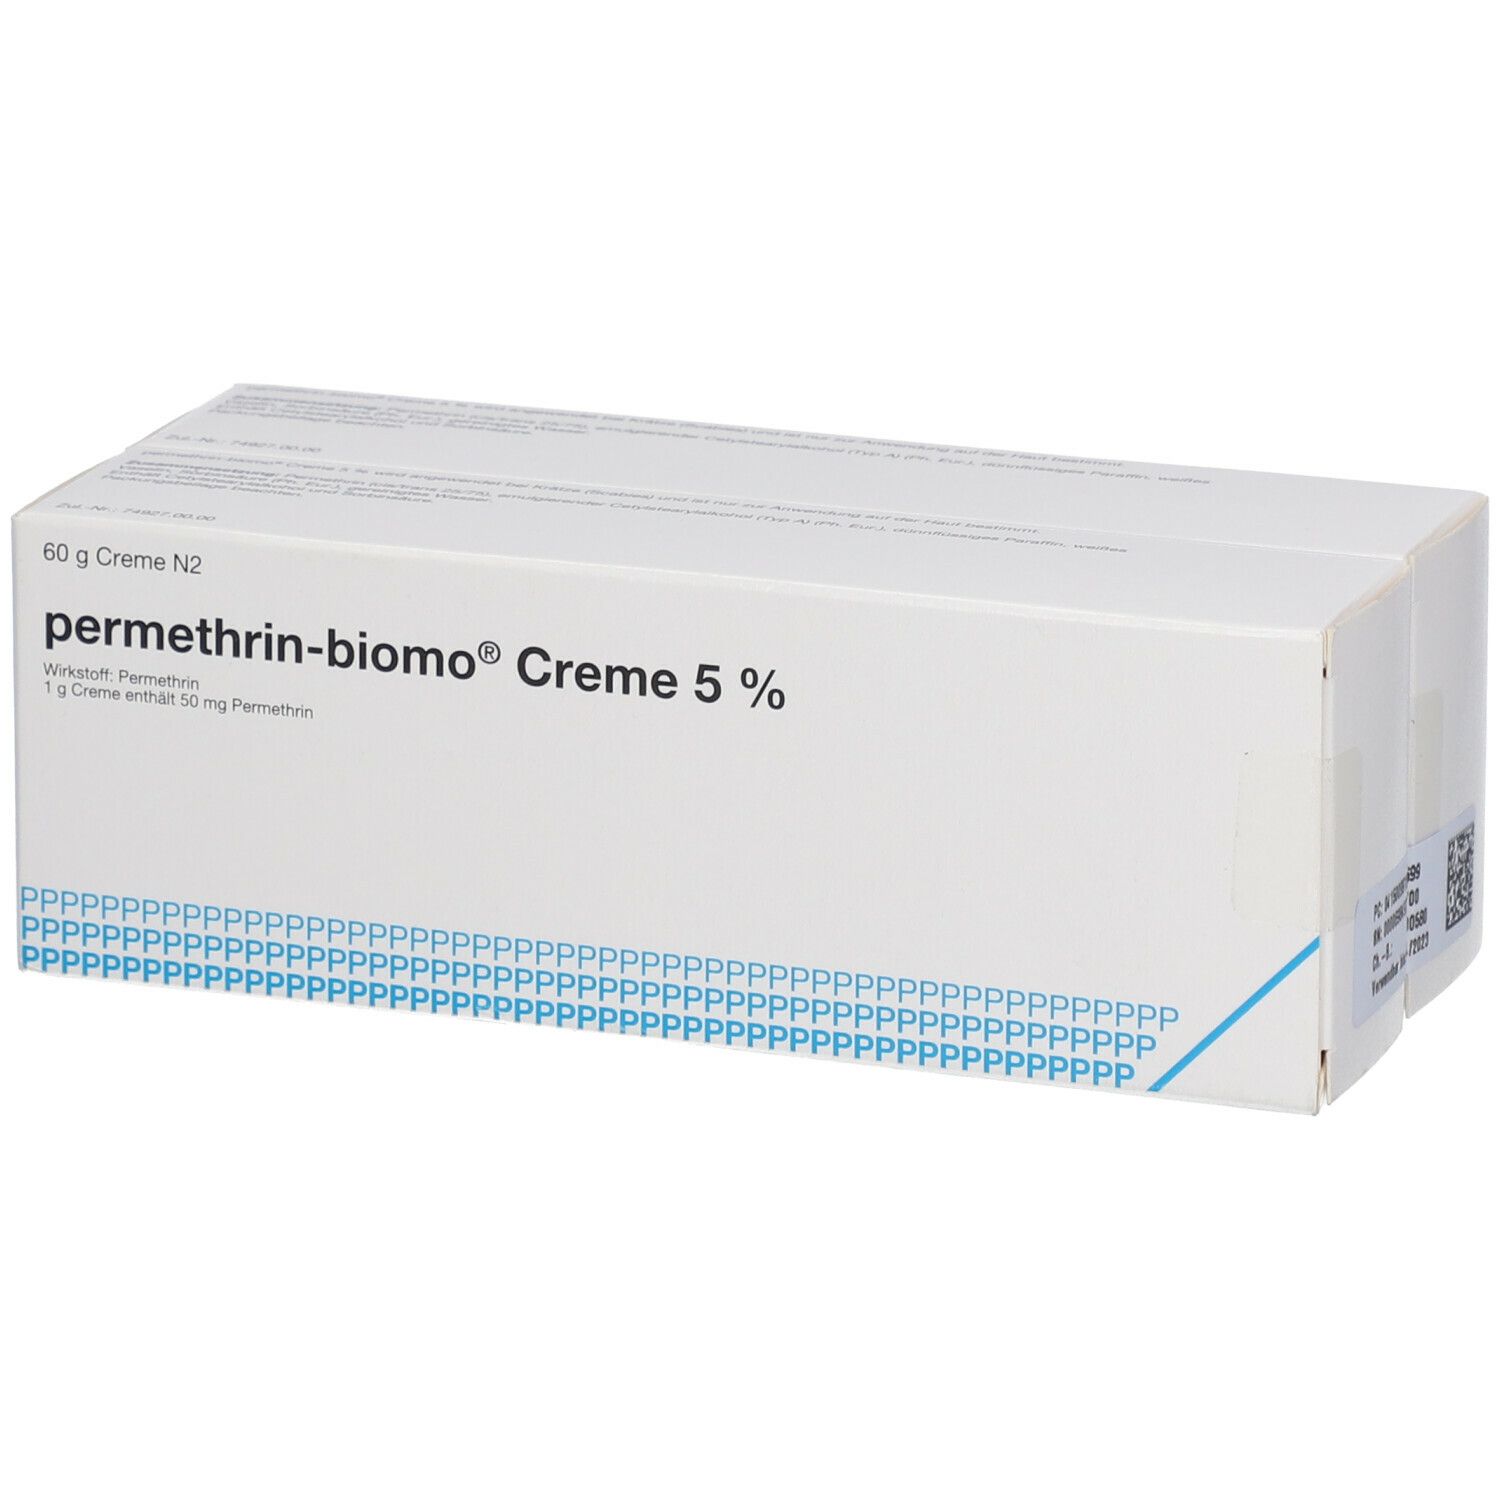 permethrin-biomo® Creme 5 %